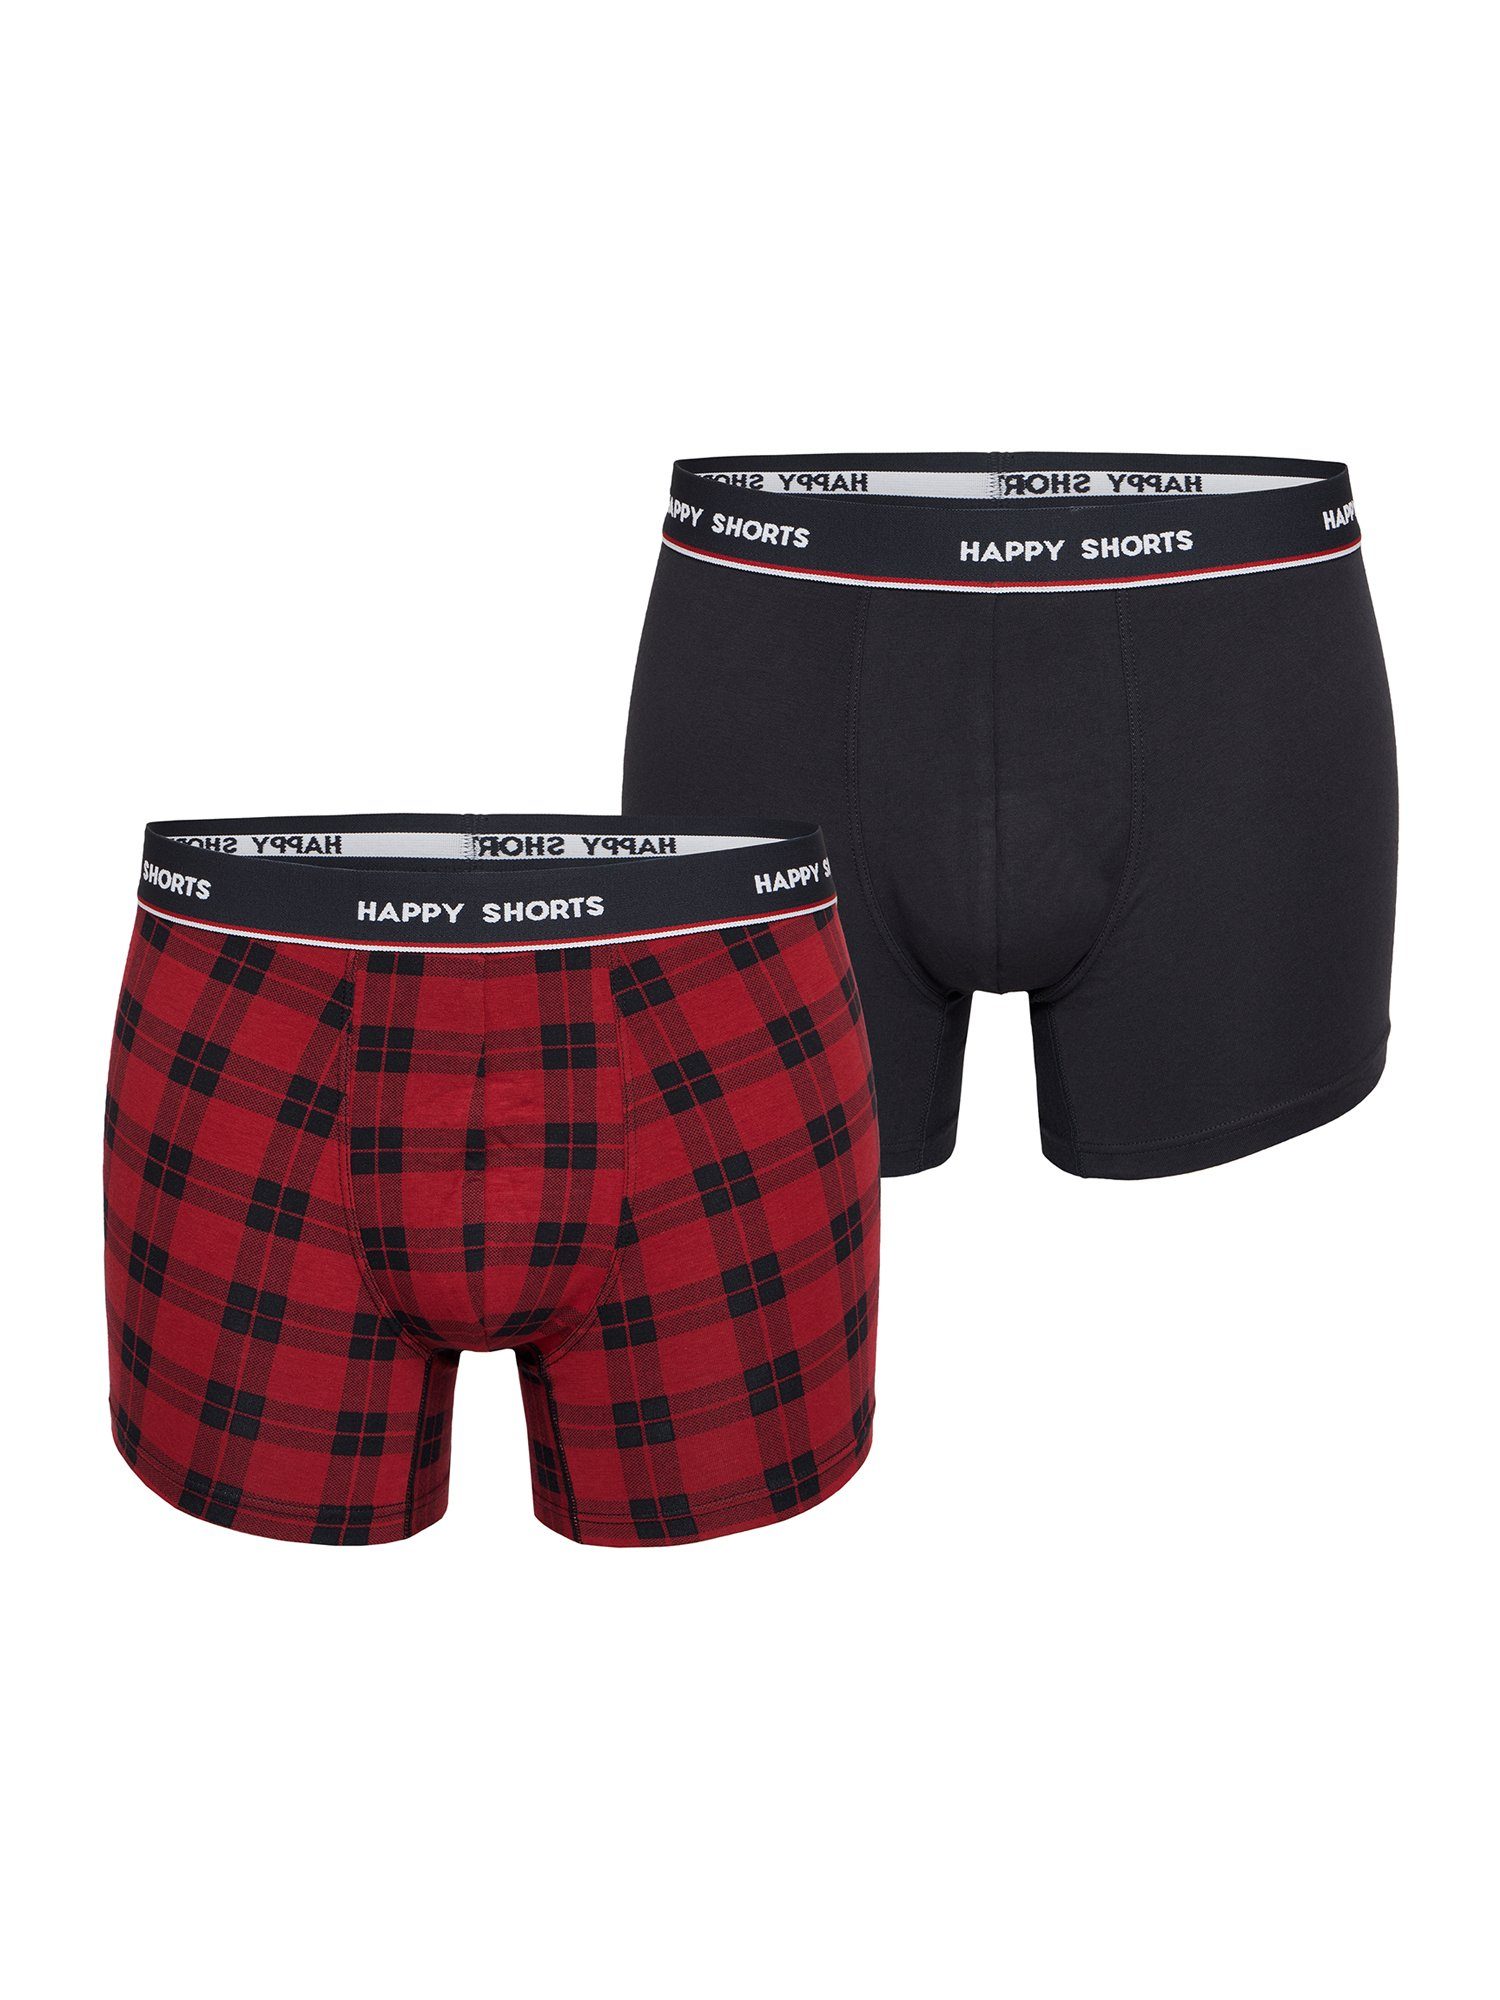 Phil & Co. Retro Pants All Styles (2-St) Boxershorts Trunks Herren bequem und stylisch